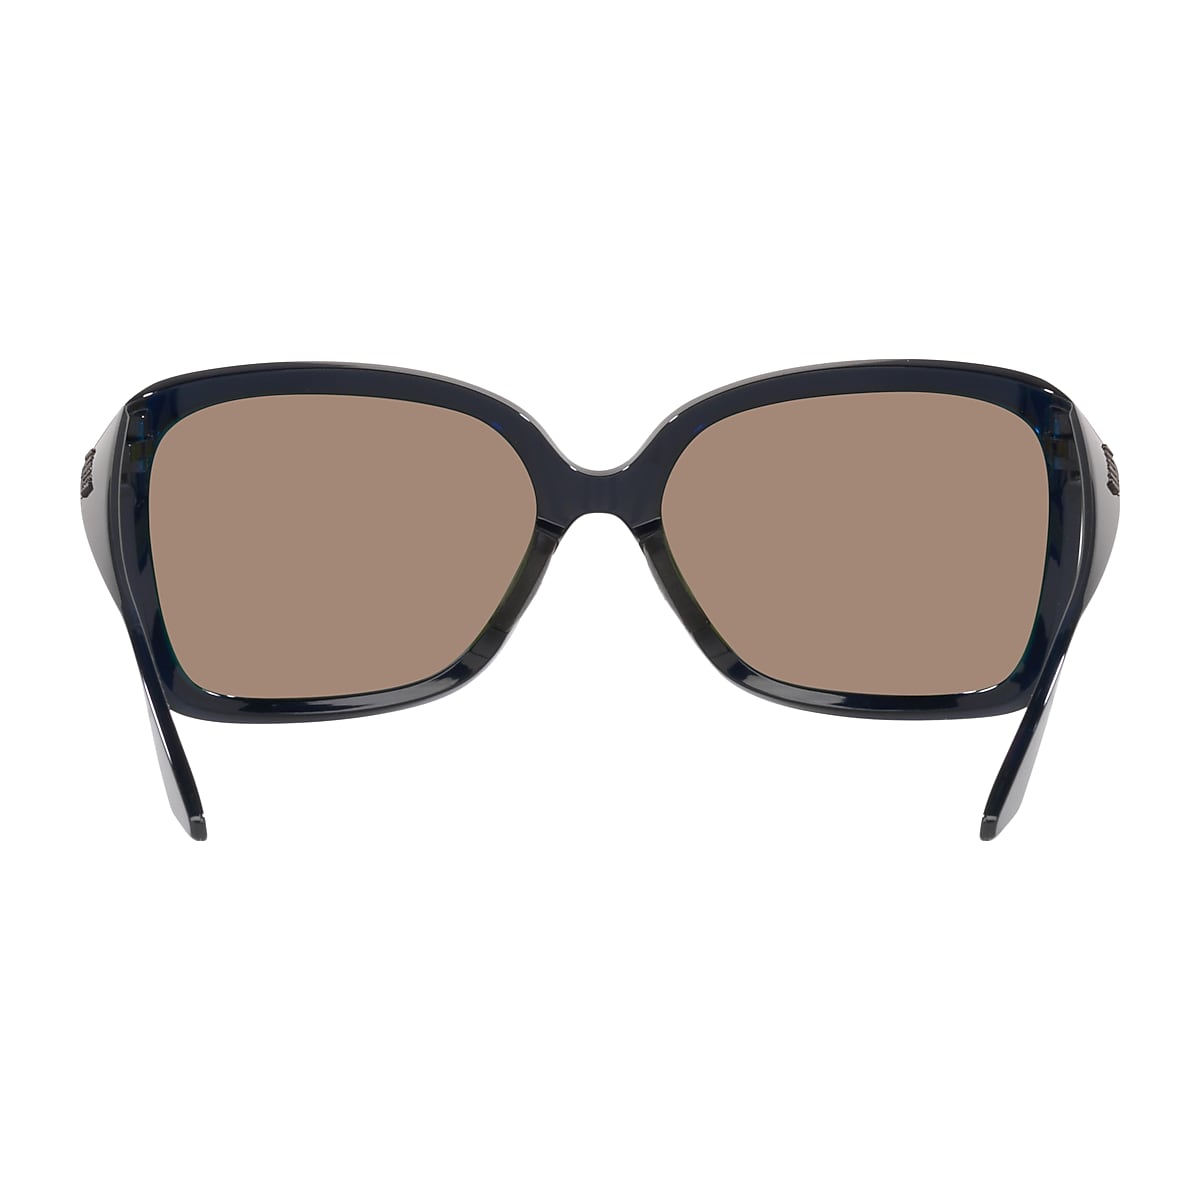 Oakley Holbrook XL Prizm Polarized S3 (VLT 14%) - Sunglasses, Free EU  Delivery